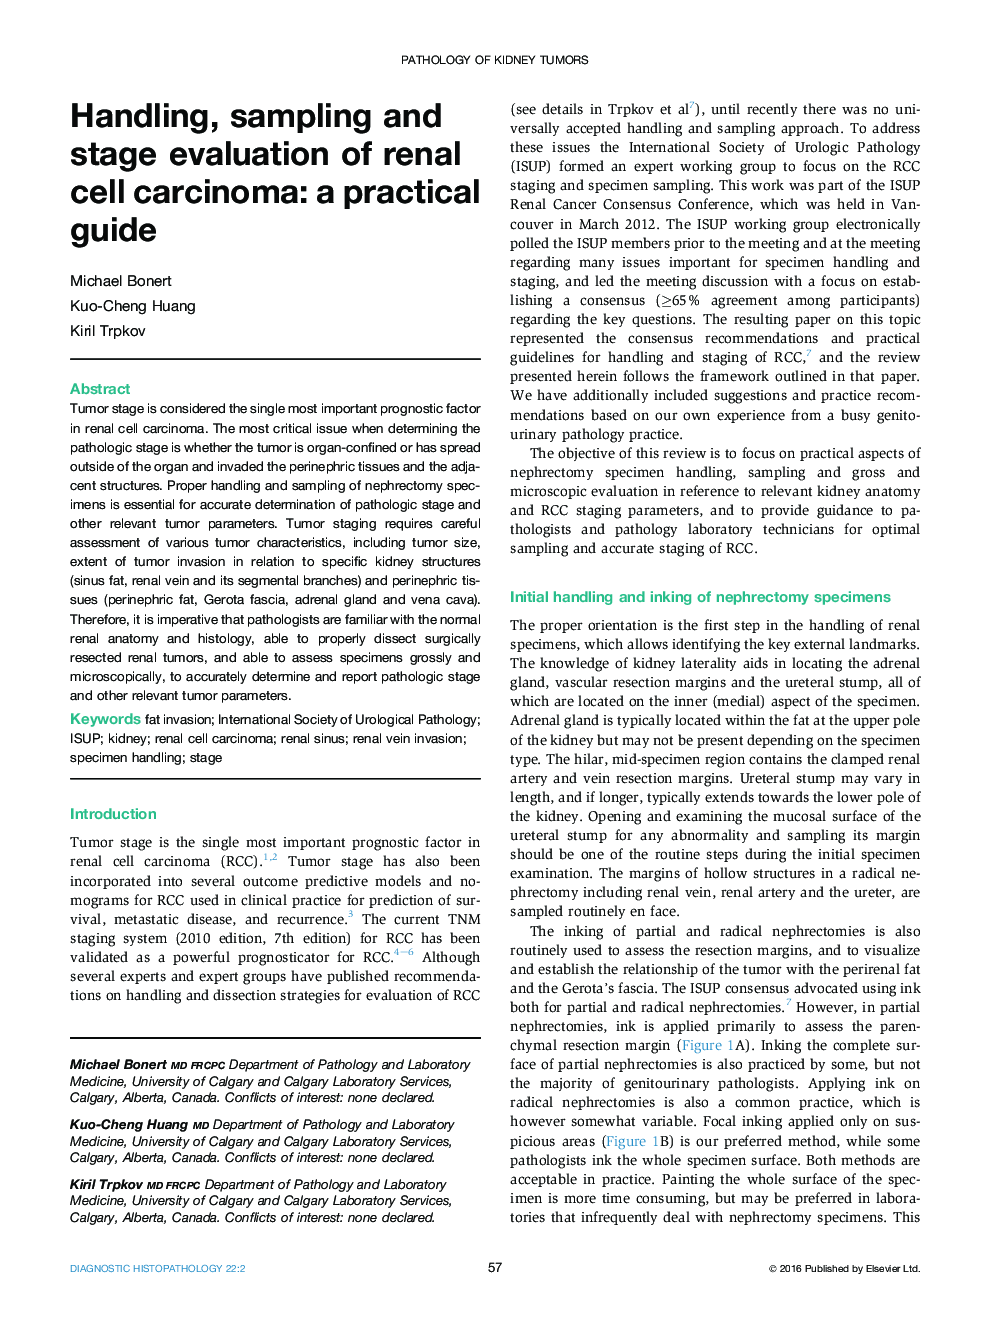 مدیریت، نمونه برداری و ارزیابی مرحله کارسینوم سلولی کلیه: راهنمای عملی 